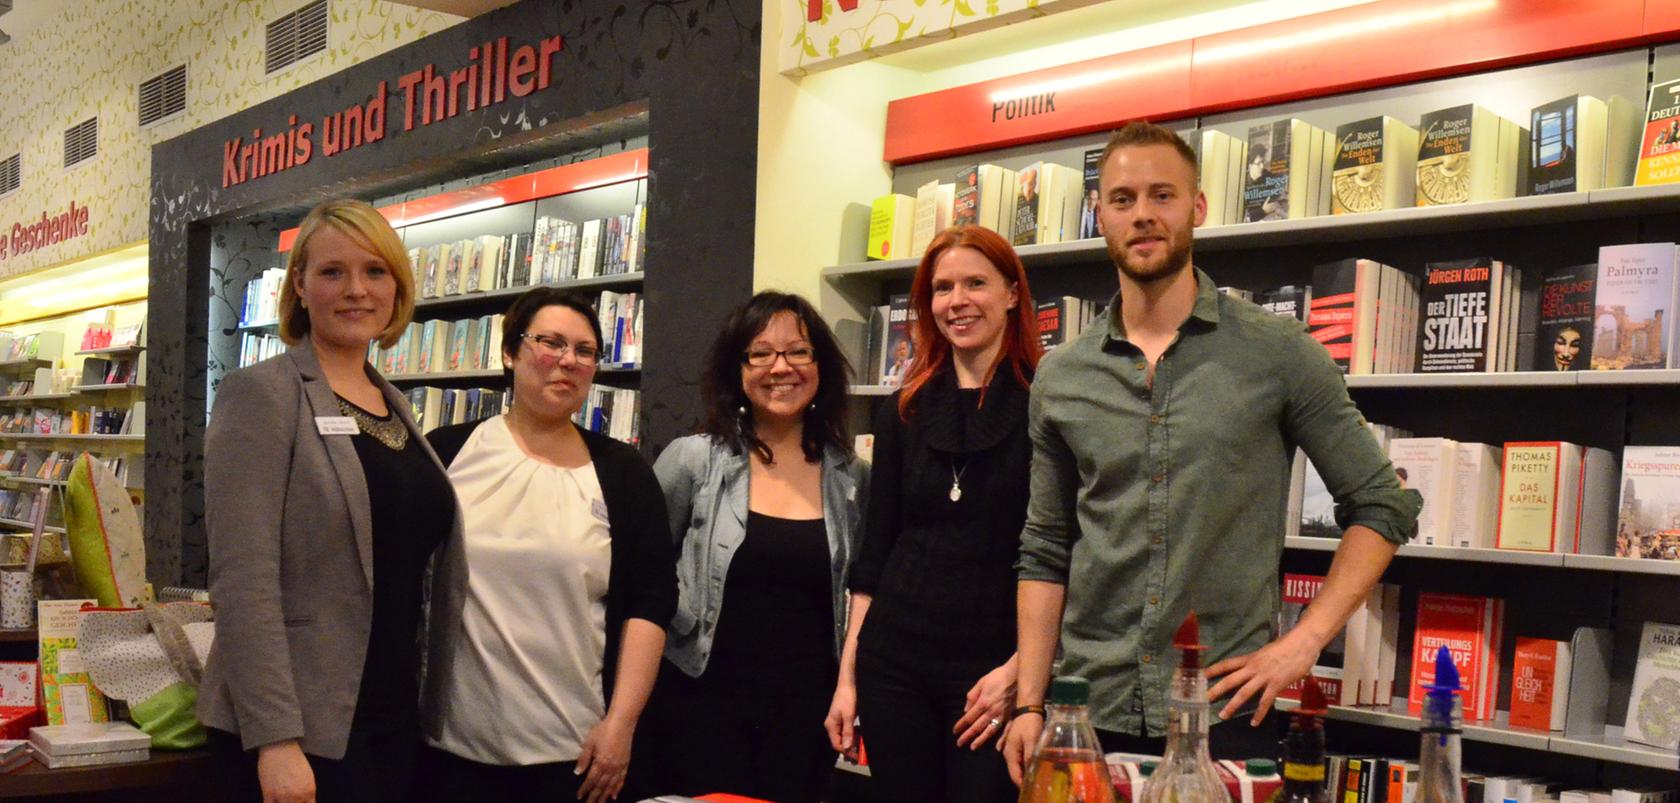 Das Team der Buchhandlung Hübscher servierte den Gästen am Donnerstagabend drei Cocktailkreationen, den "French 76", den "White Russian" und den "Munich Mule".